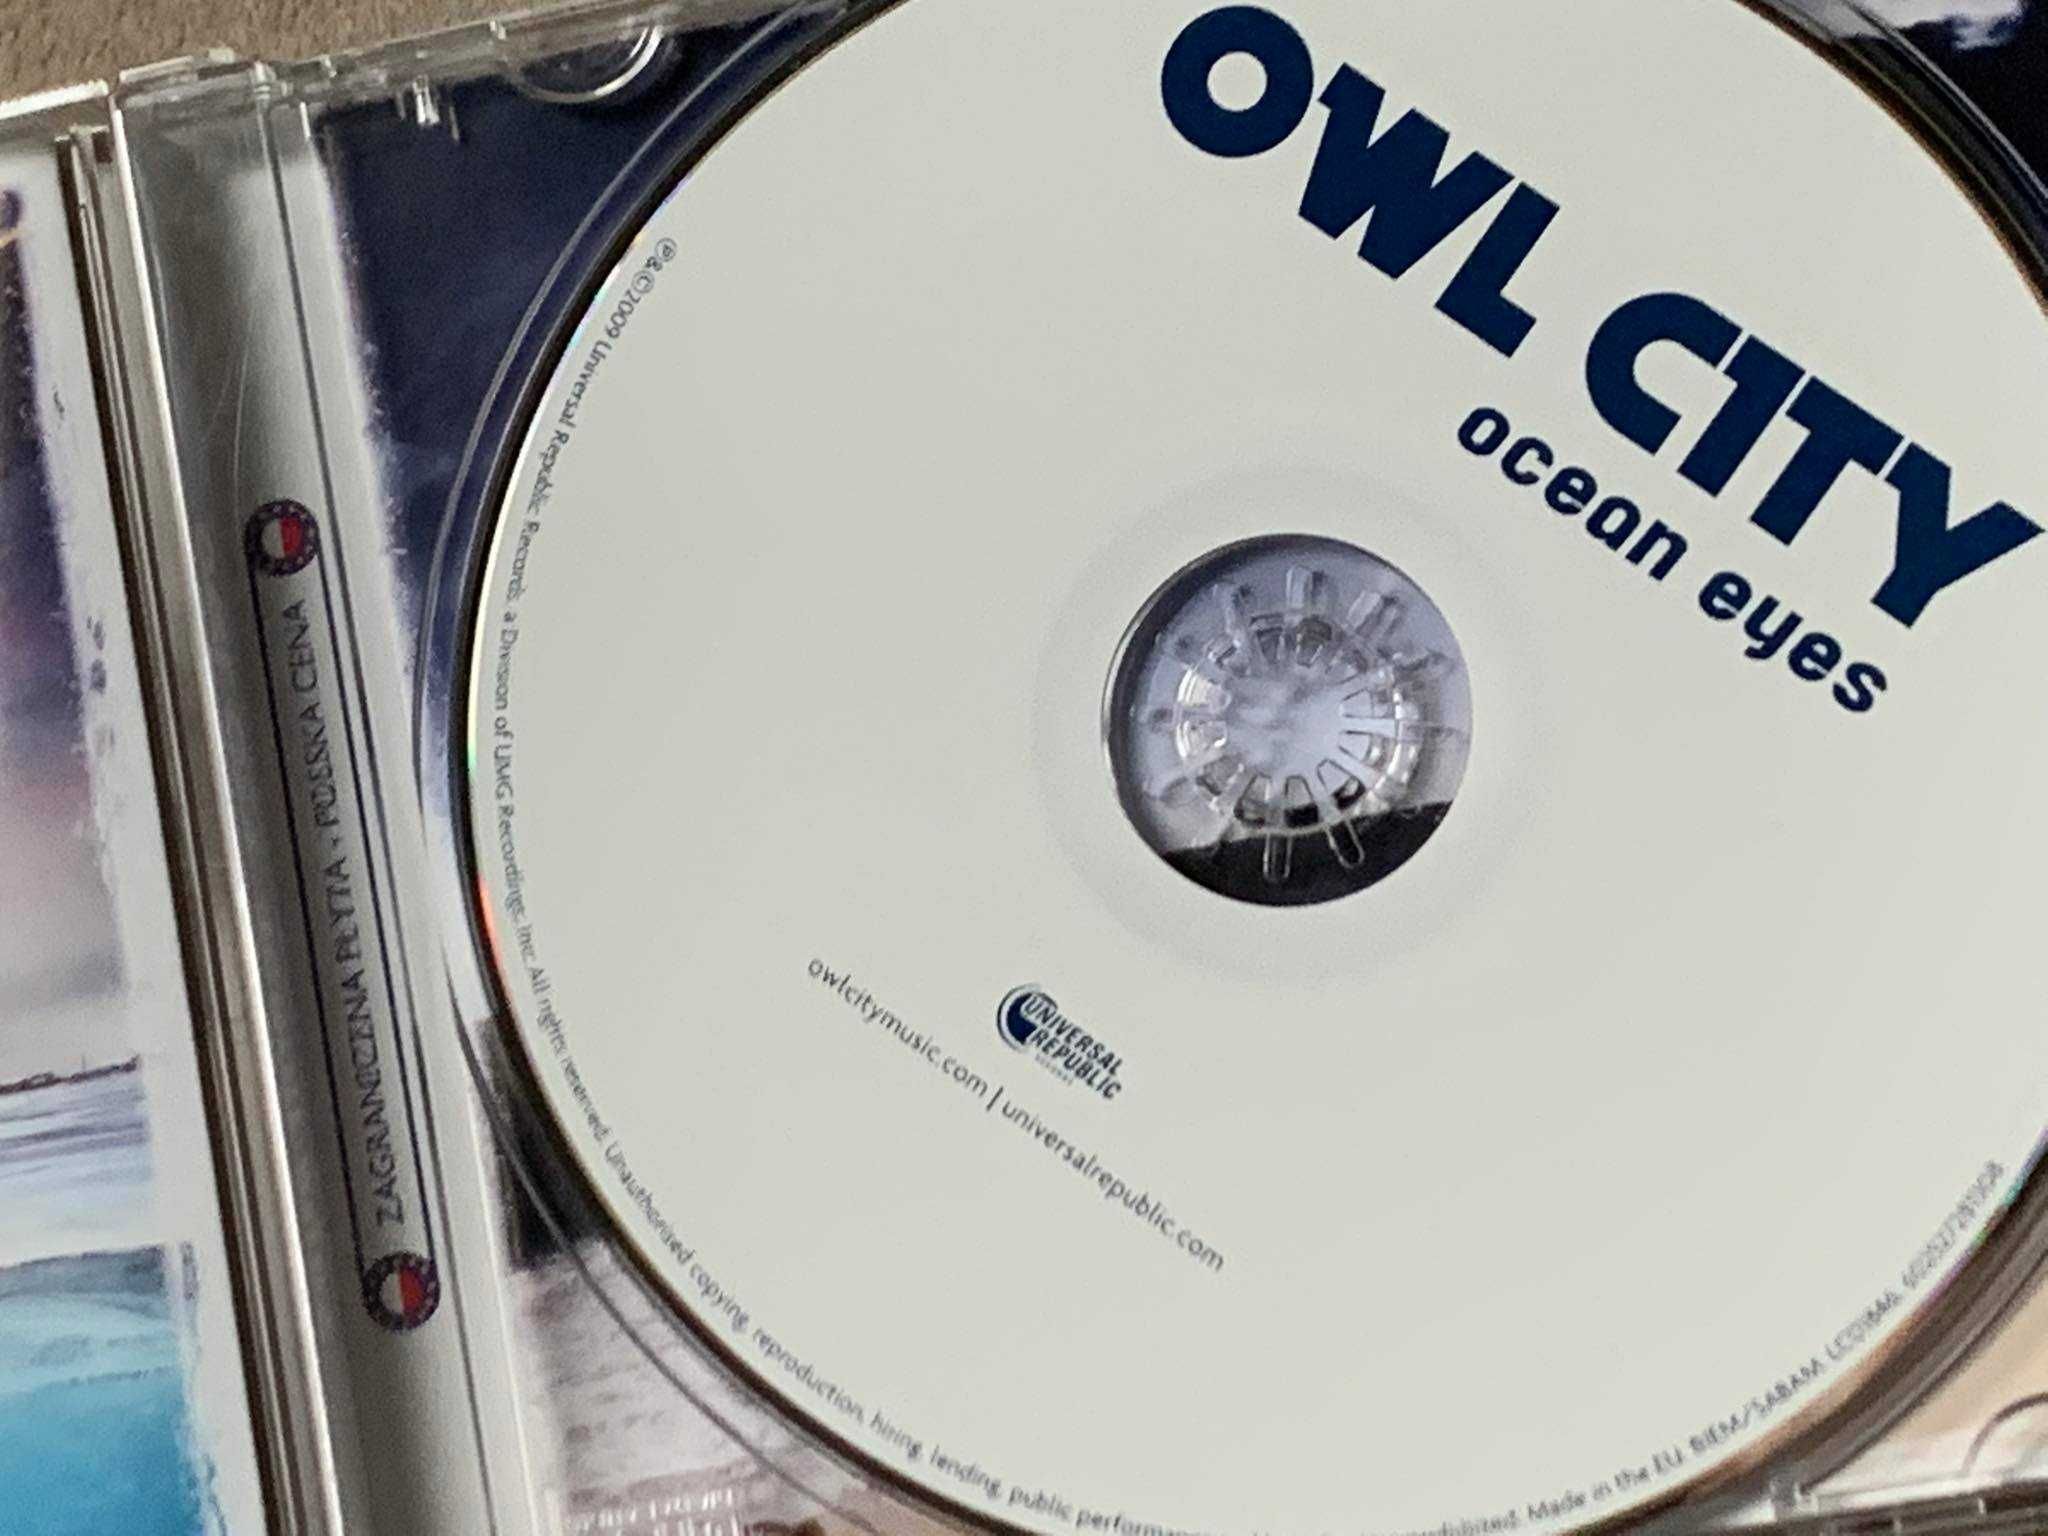 Owl City - Ocean Eyes - CD - stan EX+!